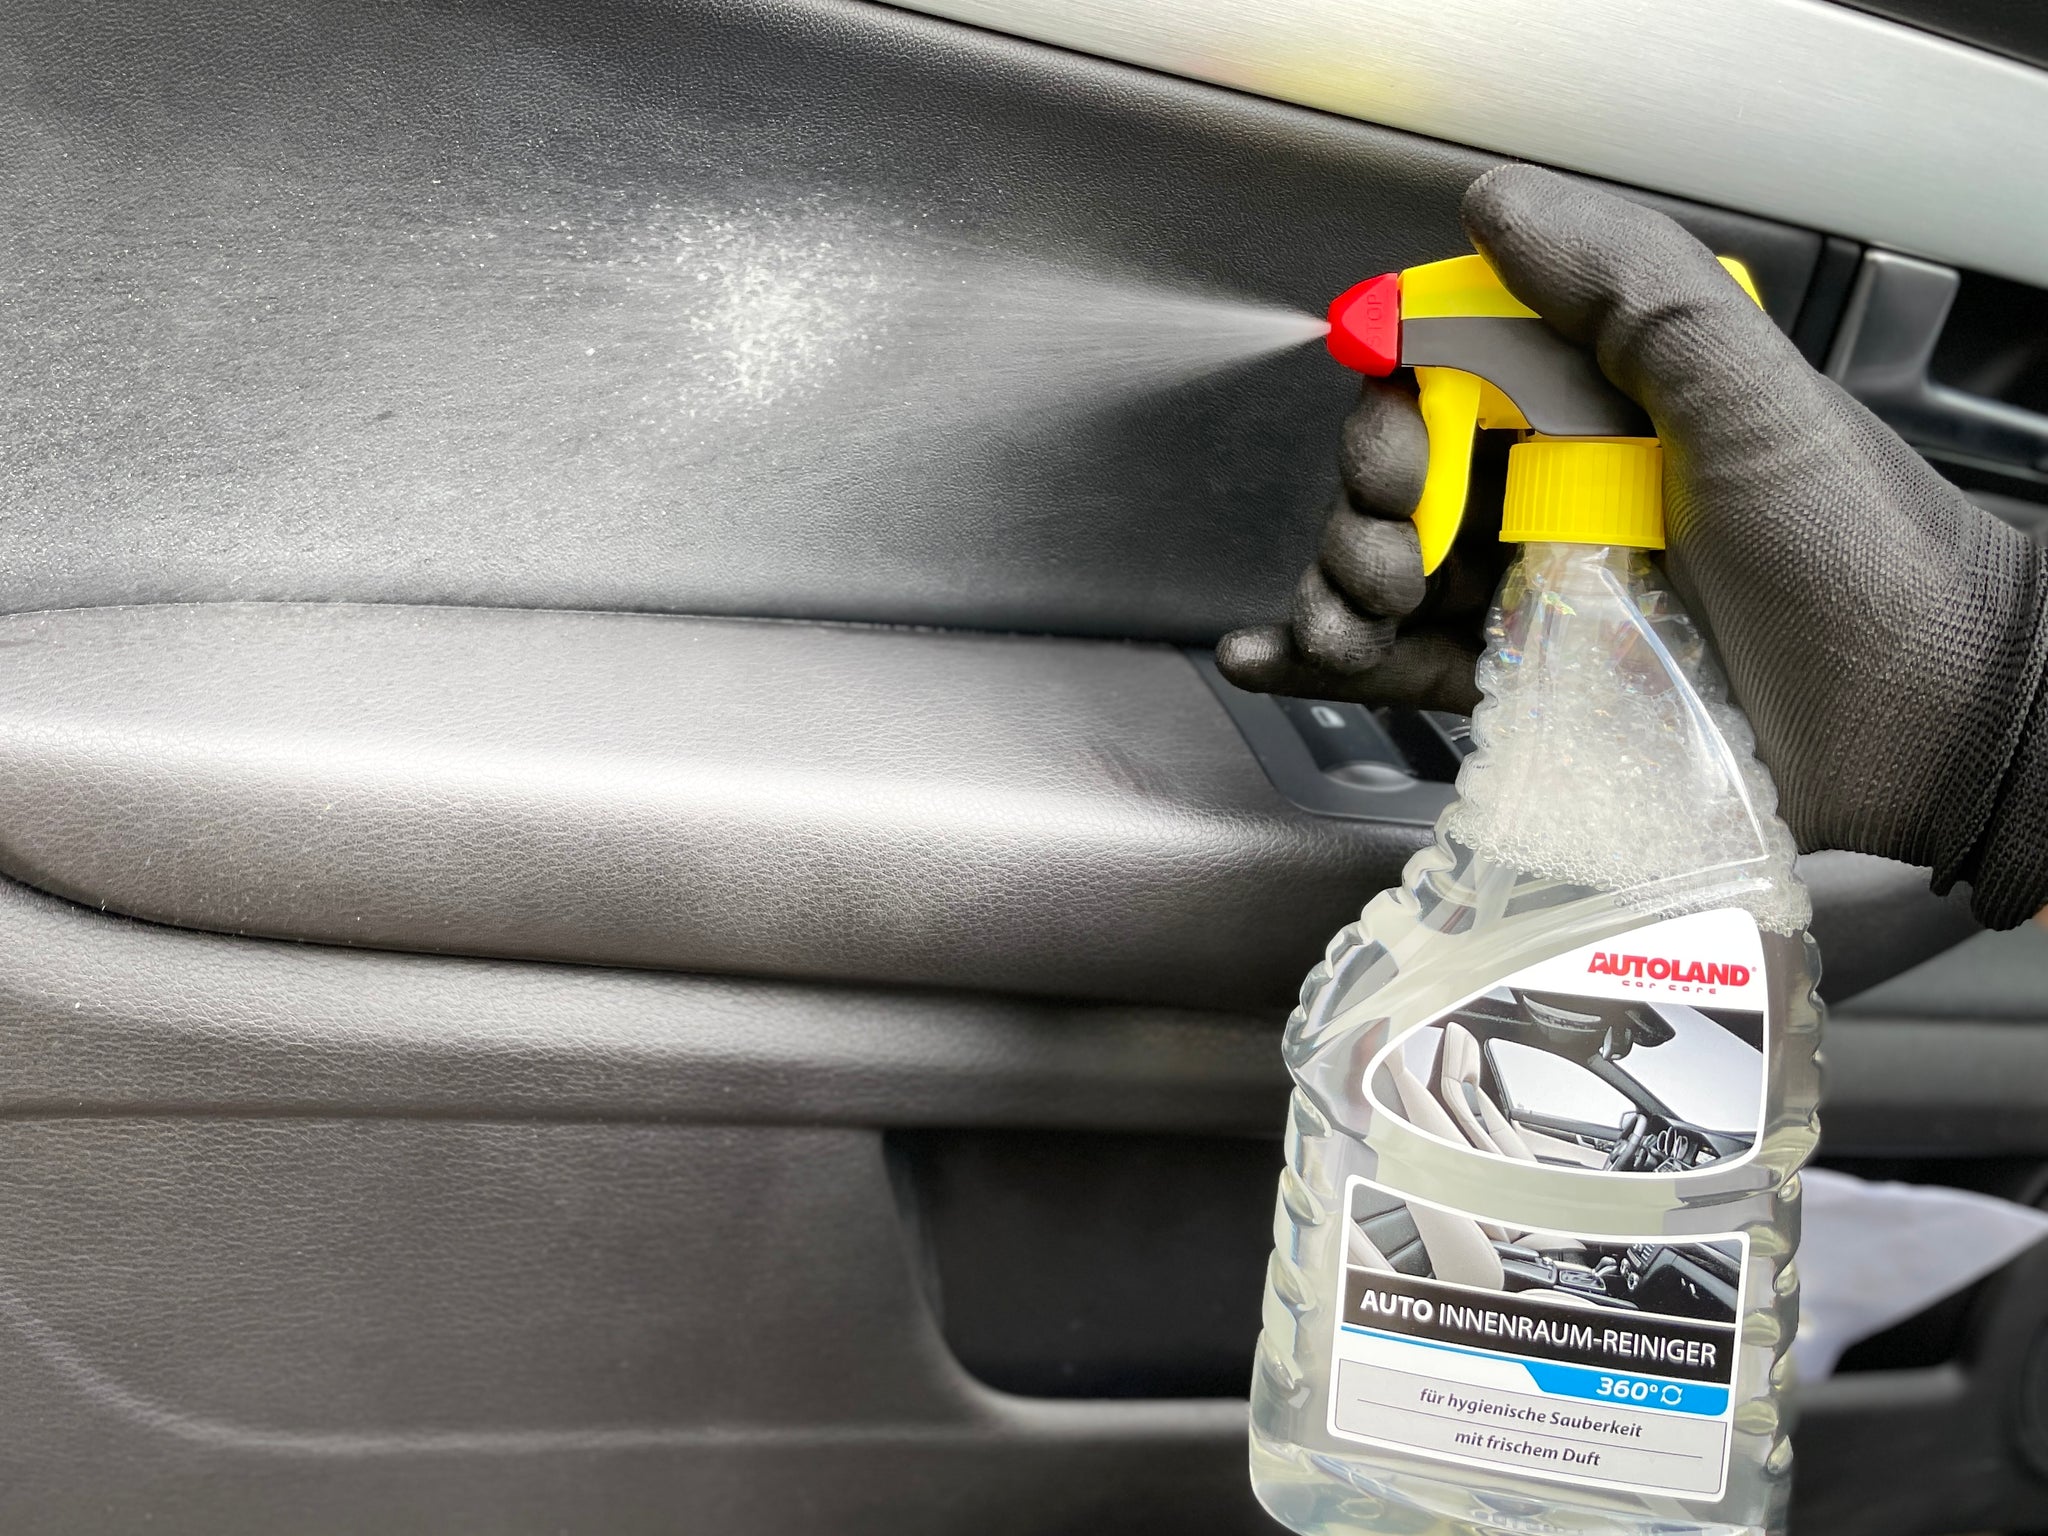 NCKIHRKK Auto Reinigungsset, 25PCS Auto Innenraum Reiniger Set mit